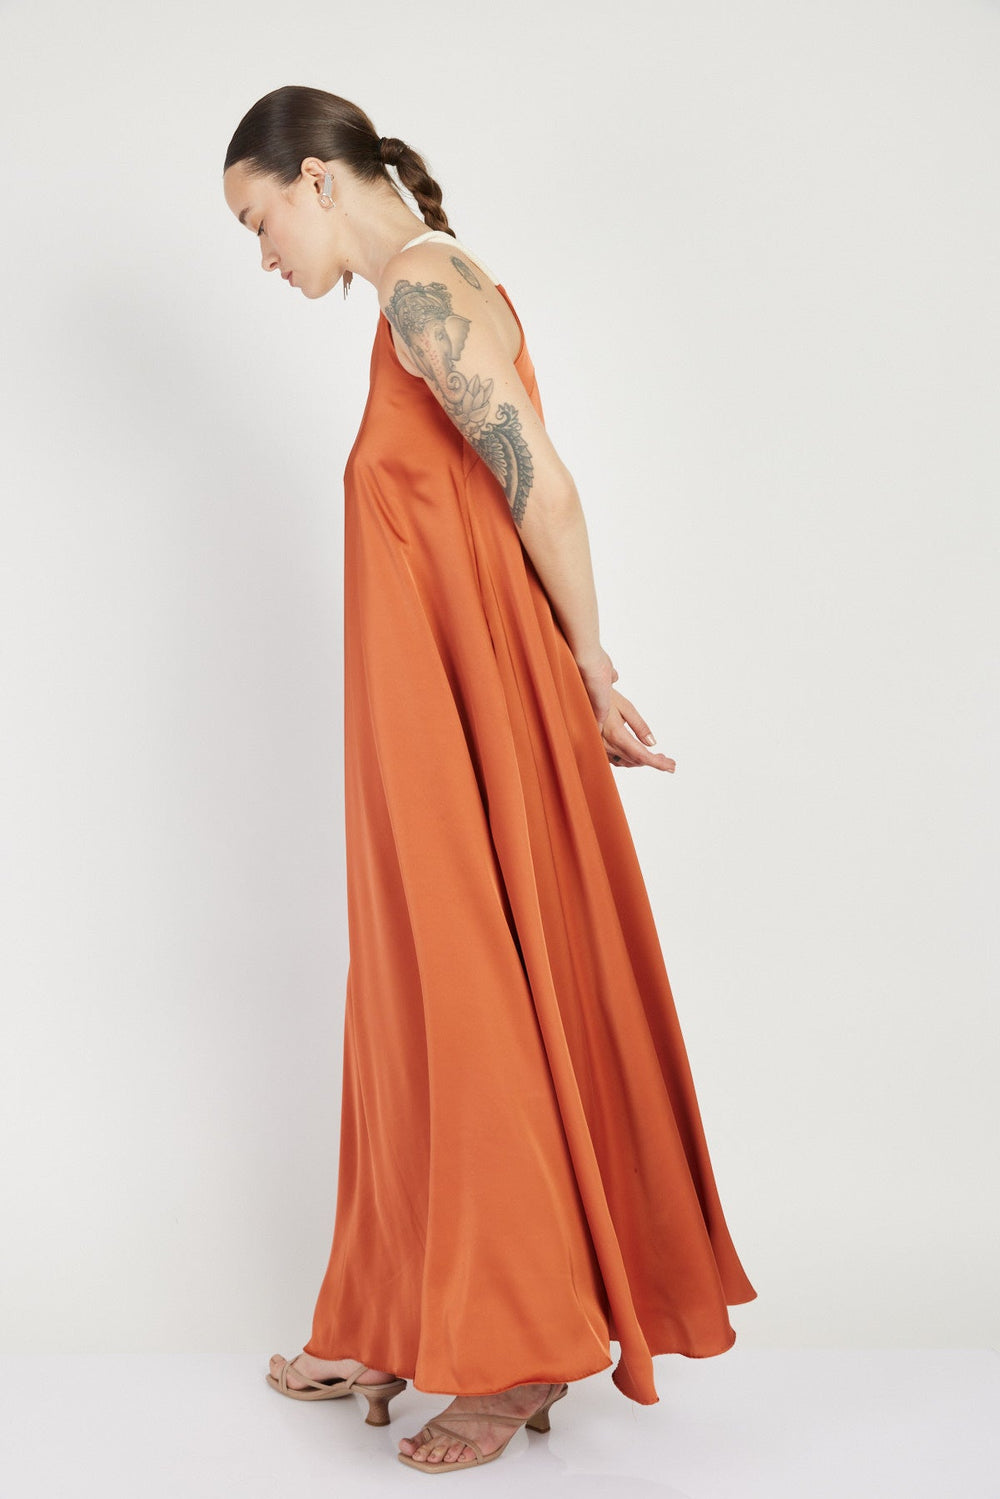 שמלת רודאו וואן שולדר בצבע חמרה - Razili X Noritamy